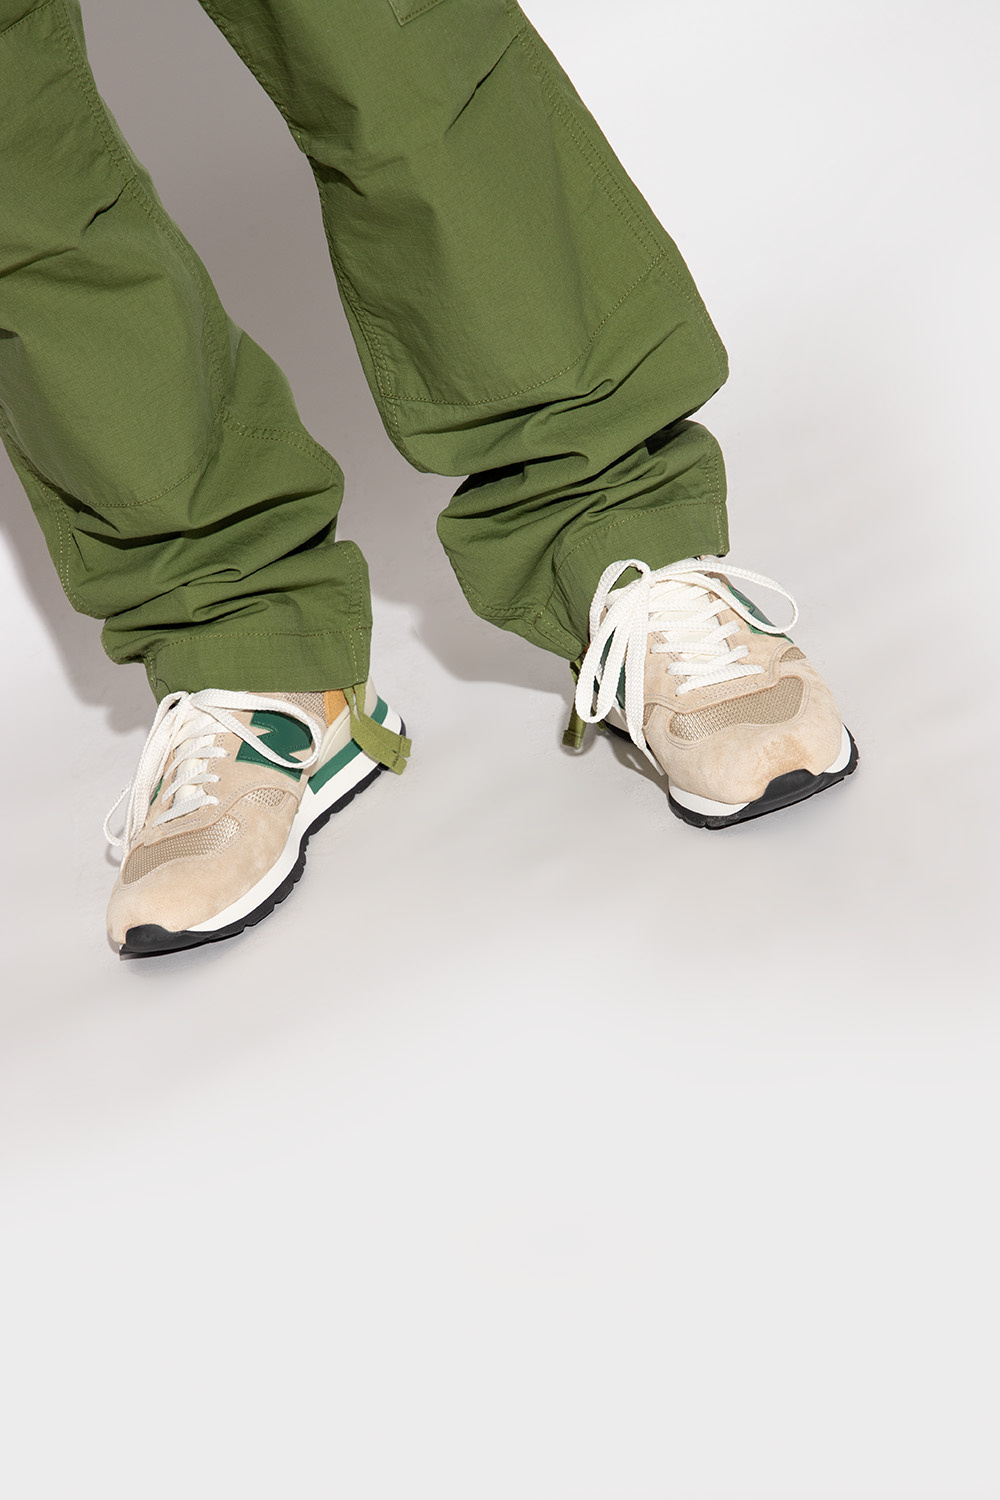 New Balance 'M990TG1' sneakers | Men's Shoes | Vitkac